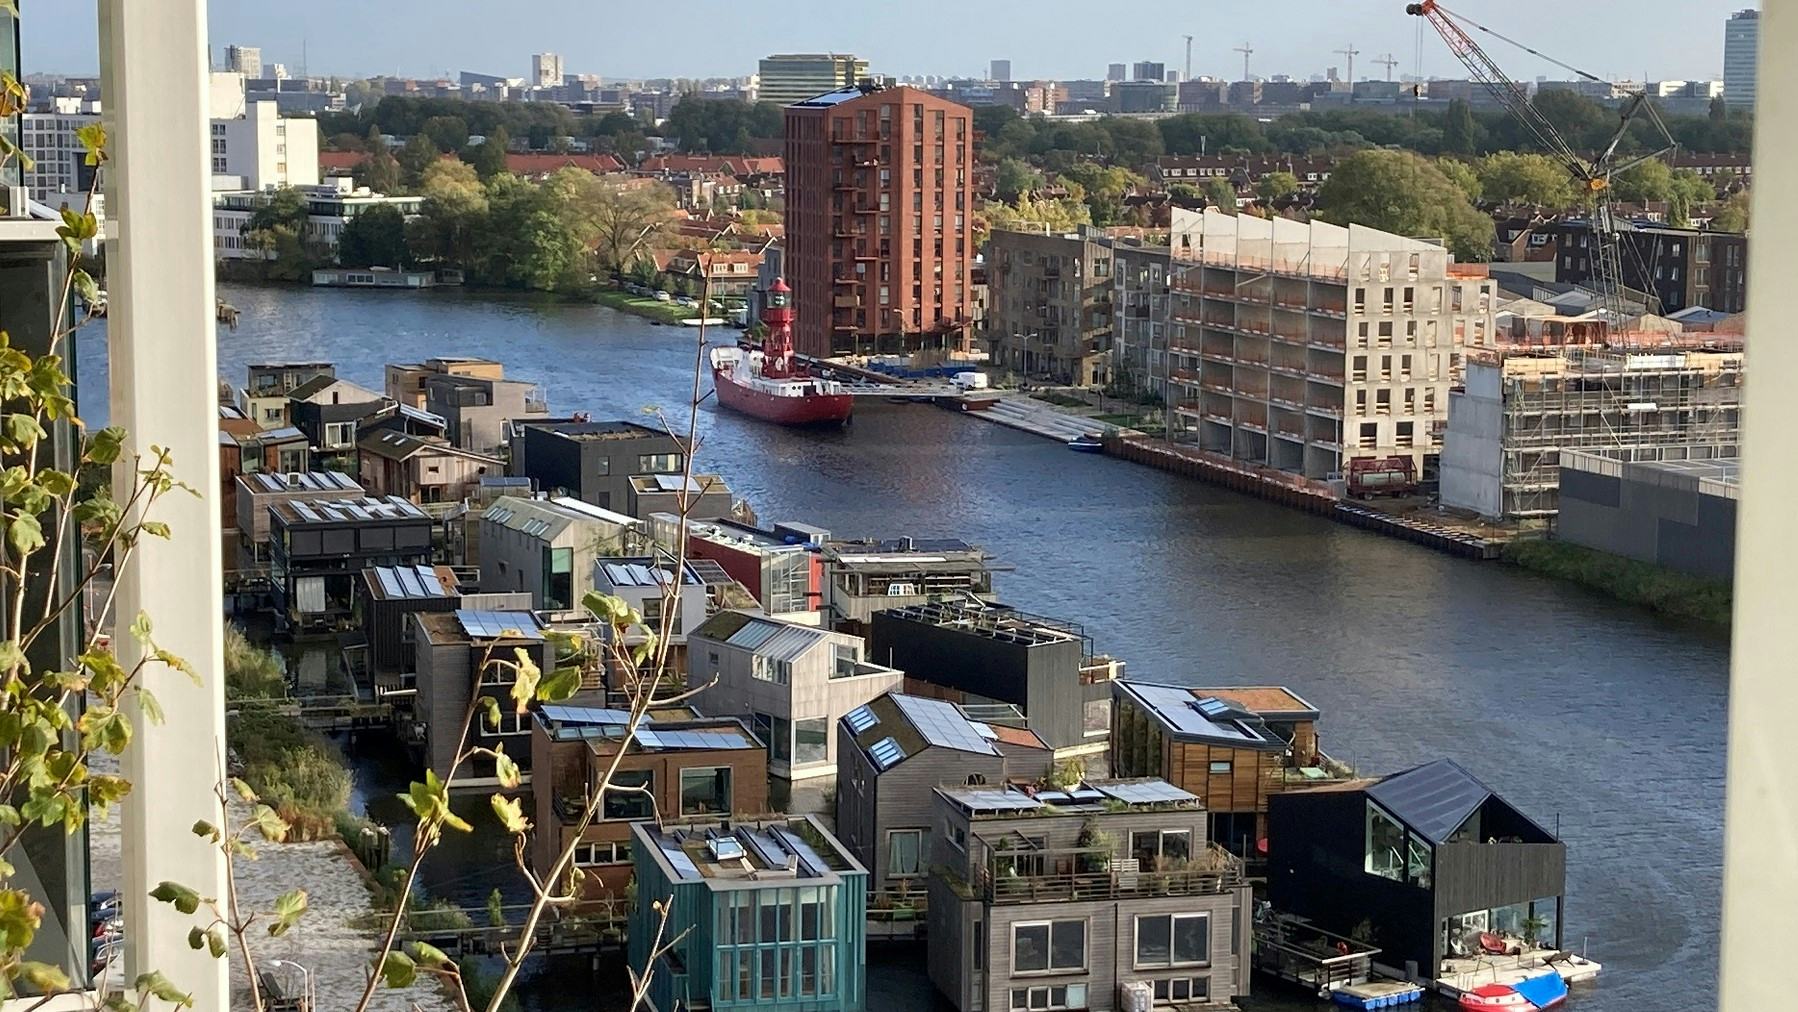 Schoonschip, drijvende wijk in Amsterdam. Foto: Thomas van Belzen